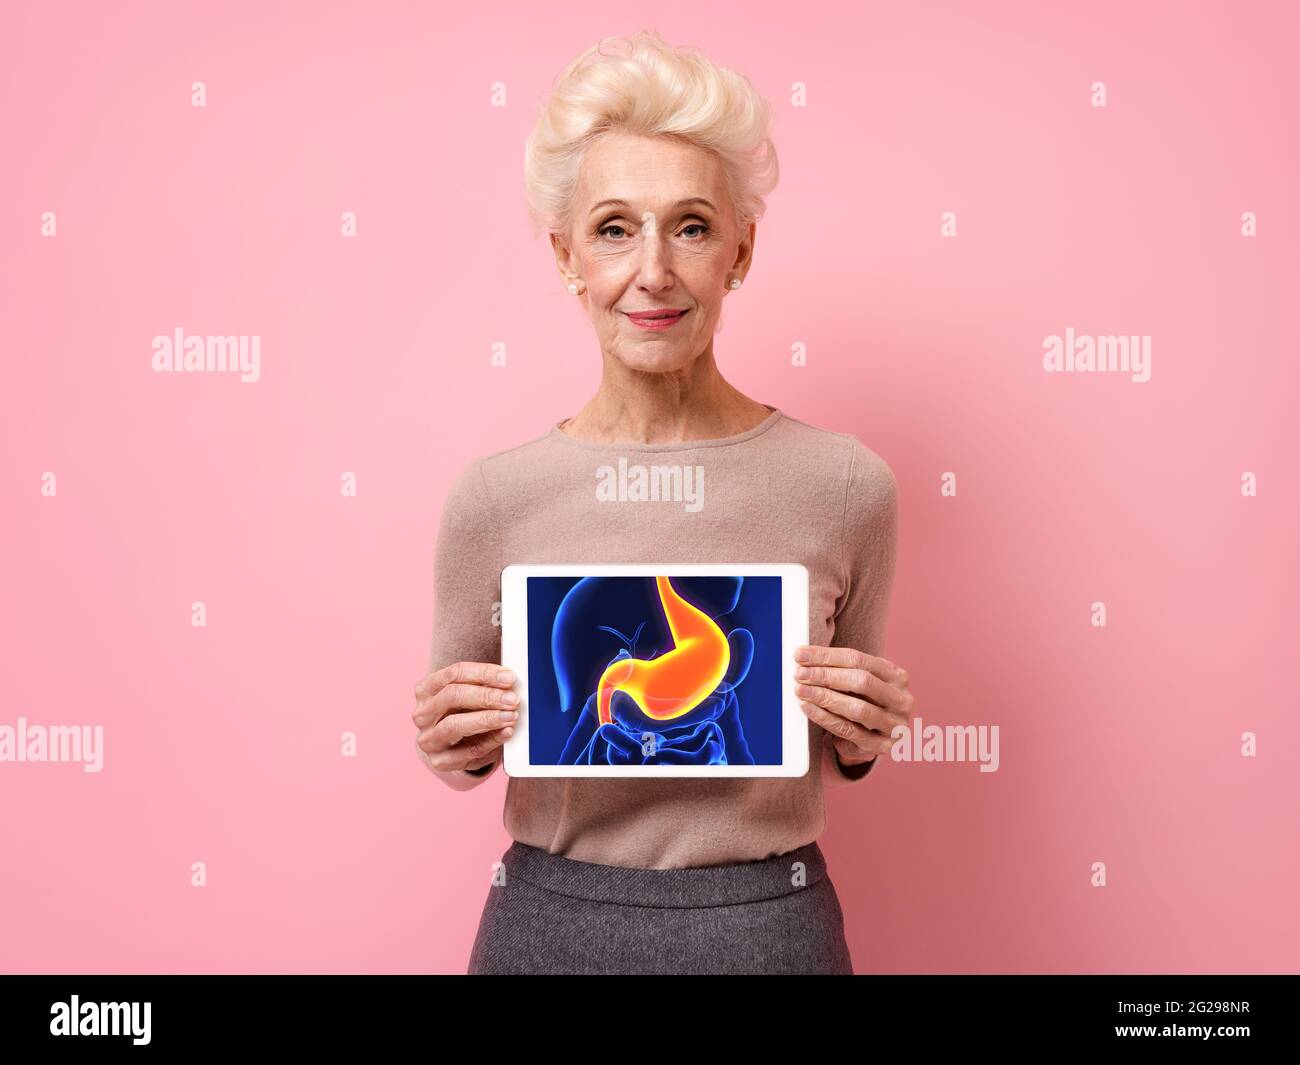 Femme attrayante montre l'image de la radiographie de l'estomac. Photo d'une femme âgée souriante avec une tablette dans les mains sur fond rose. Conc. Médicale Banque D'Images